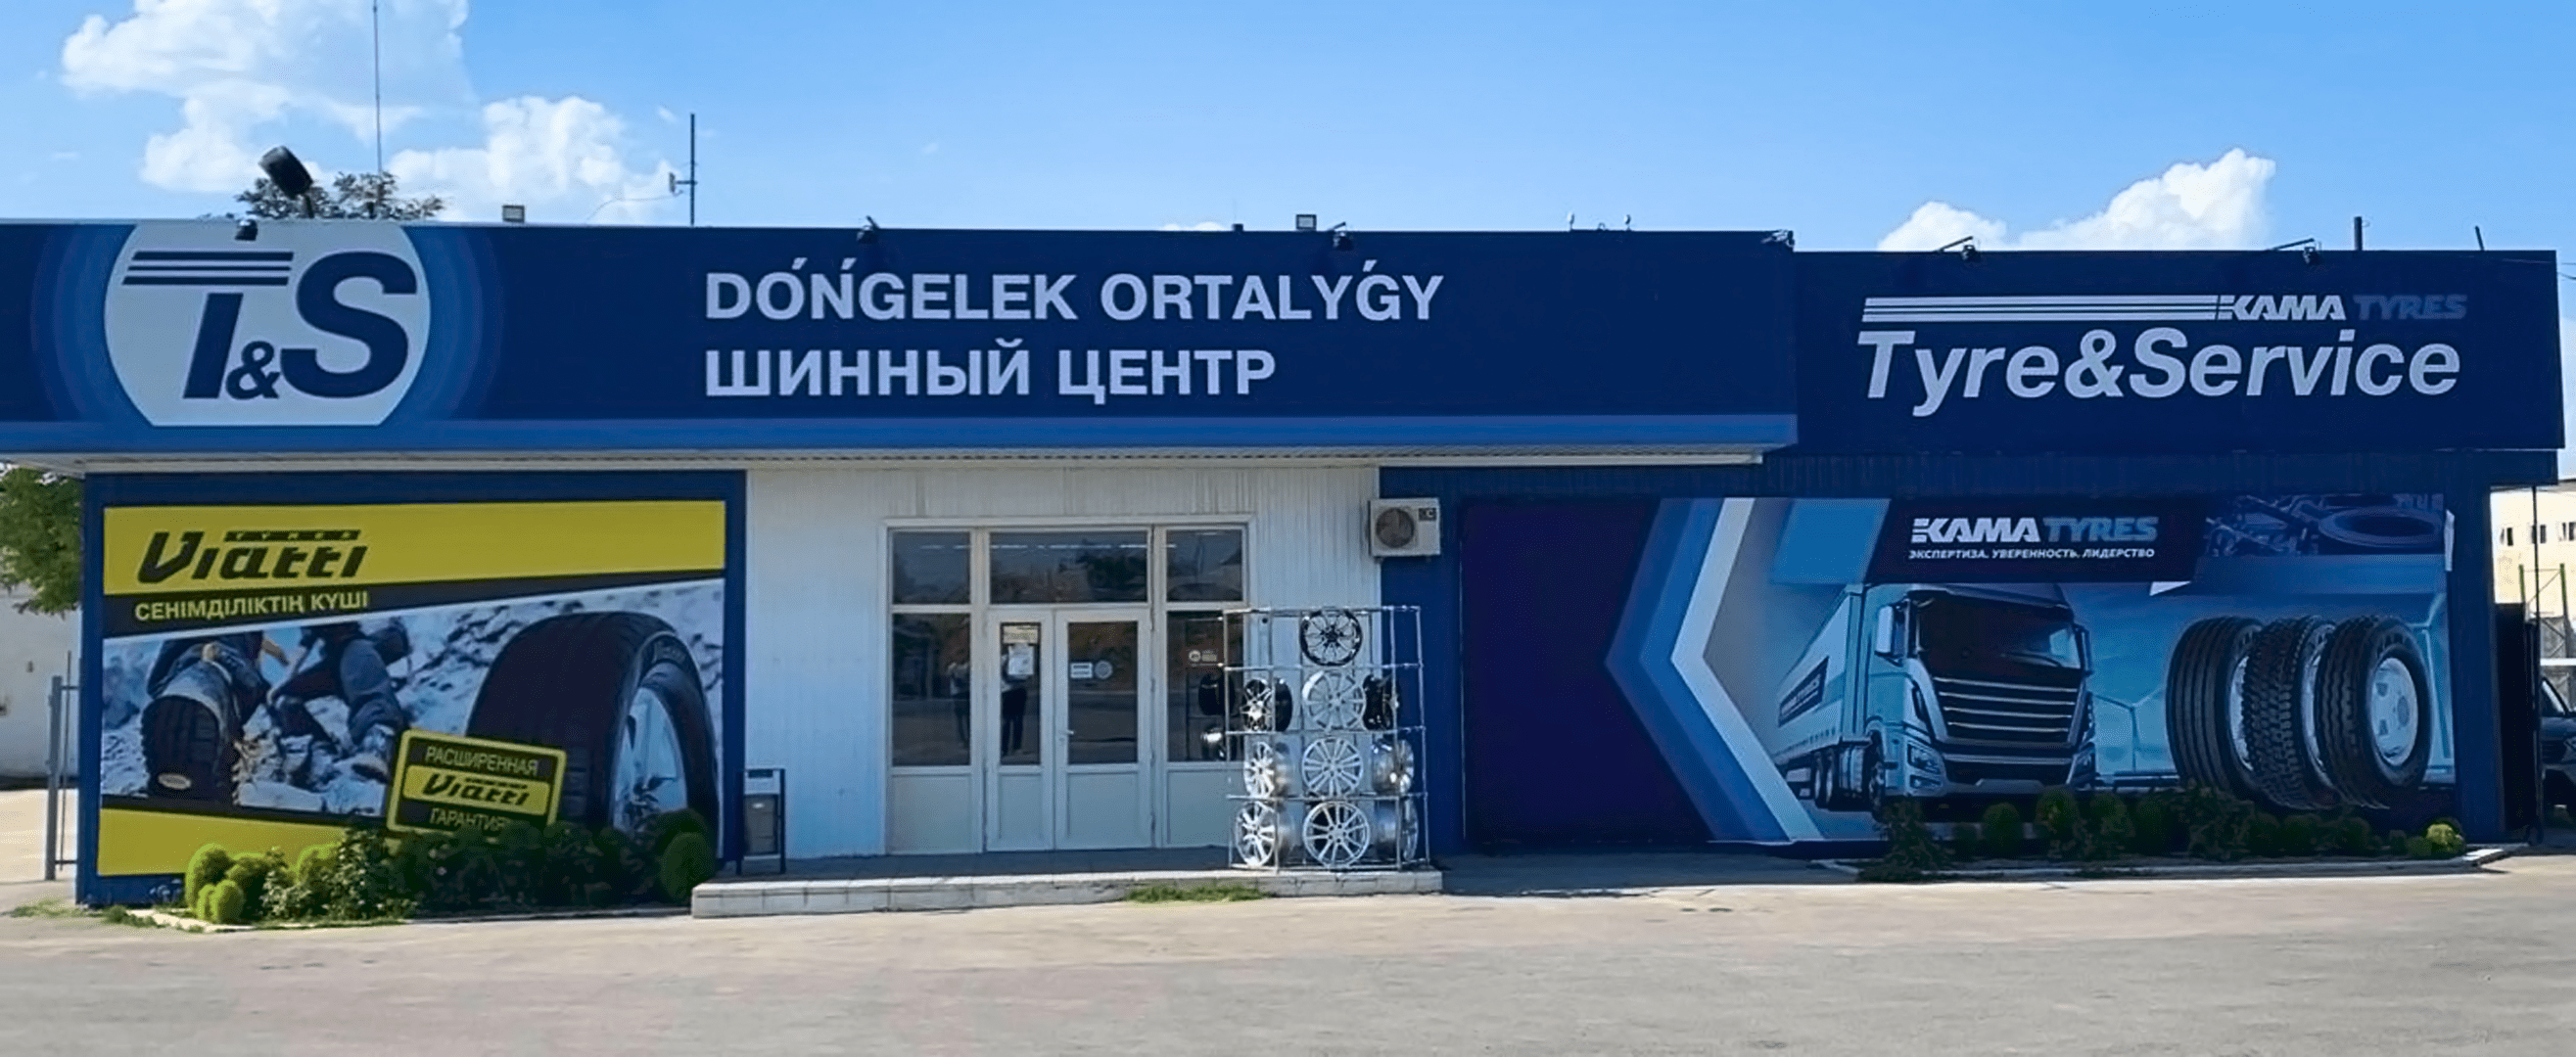 Номер телефона шинного центра. Шинный центр. Шинный центр TYREPLUS. Вулканизация лого. Шинный центр в Бишкеке.